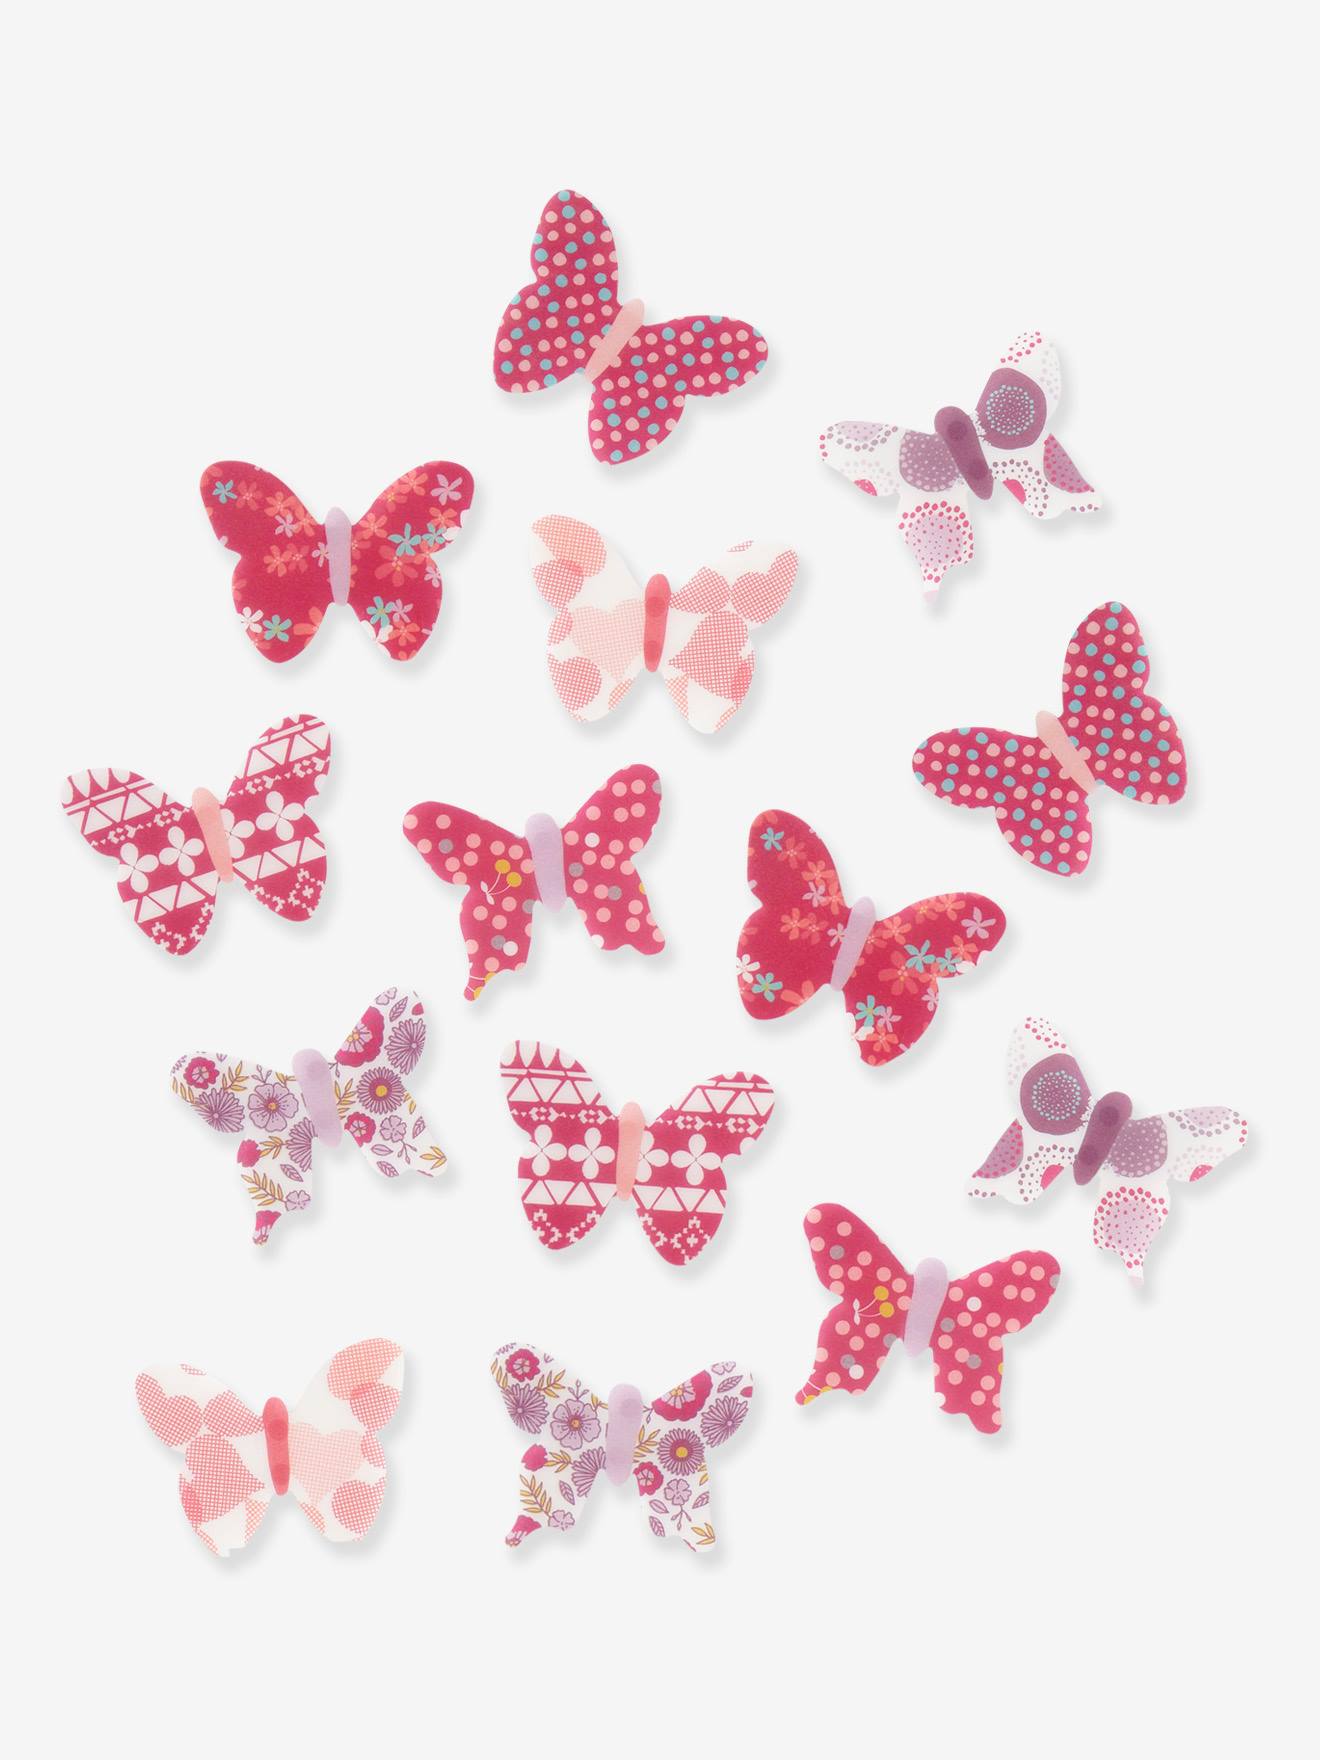 Lit simple aux papillons colorés pour la chambre de votre fille